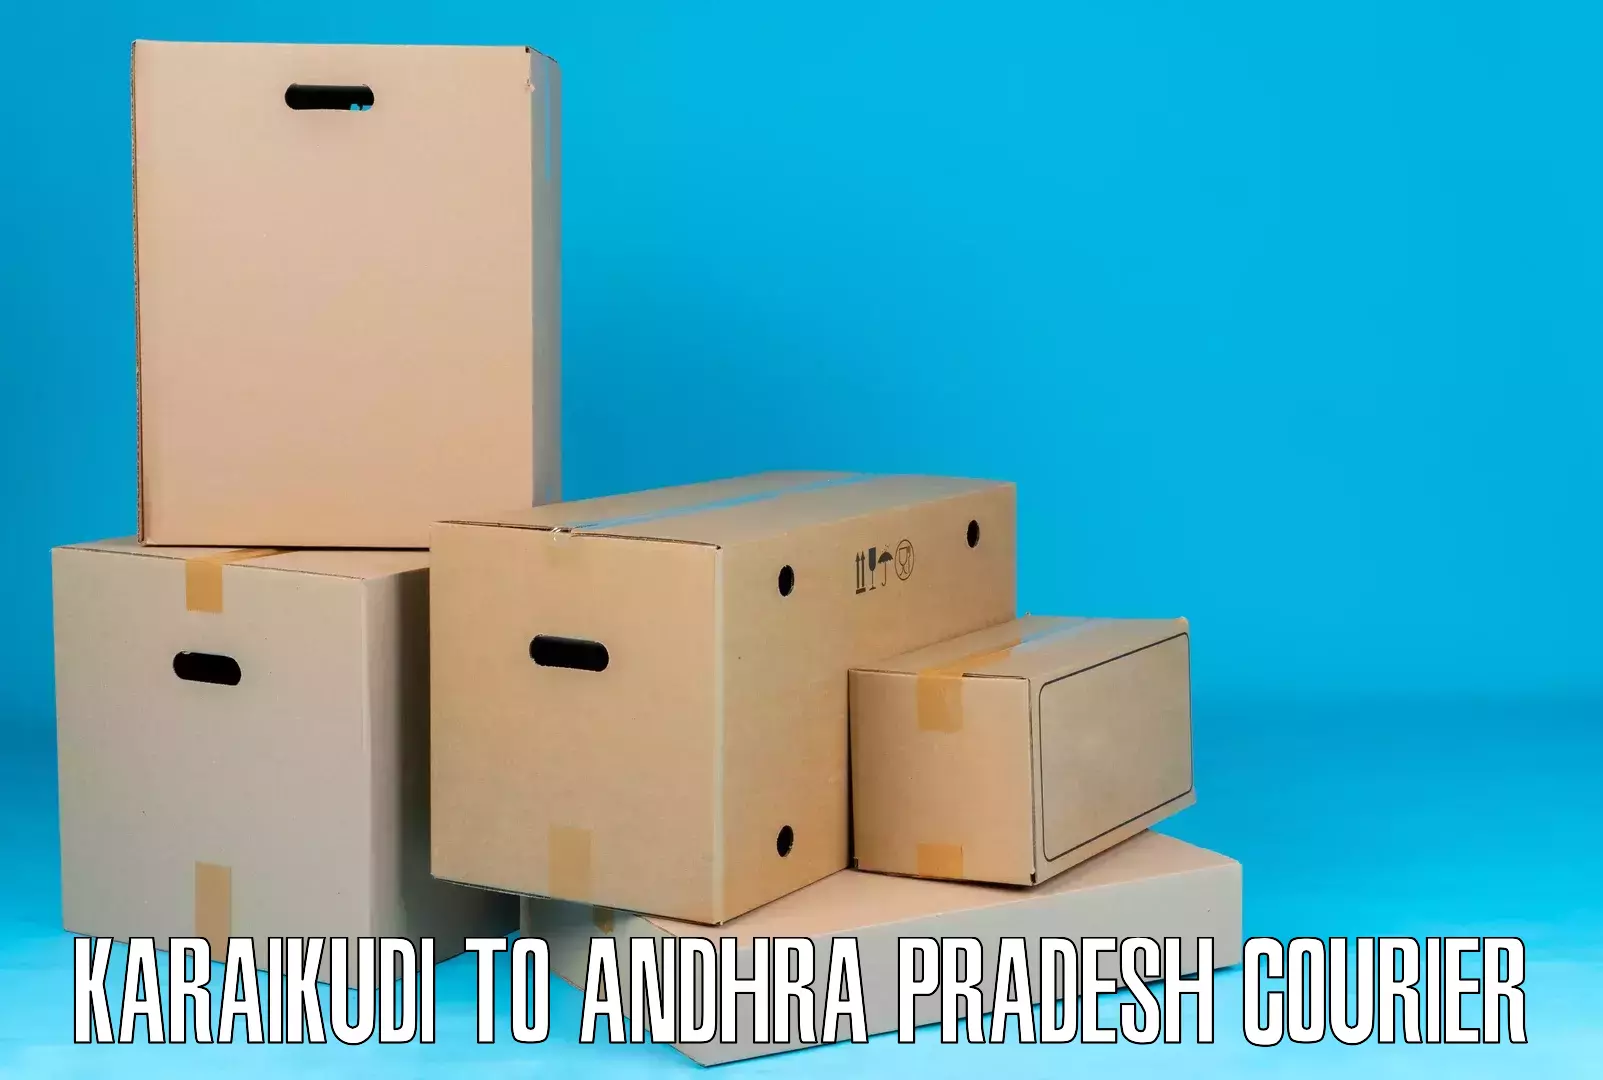 Modern courier technology Karaikudi to Andhra Pradesh